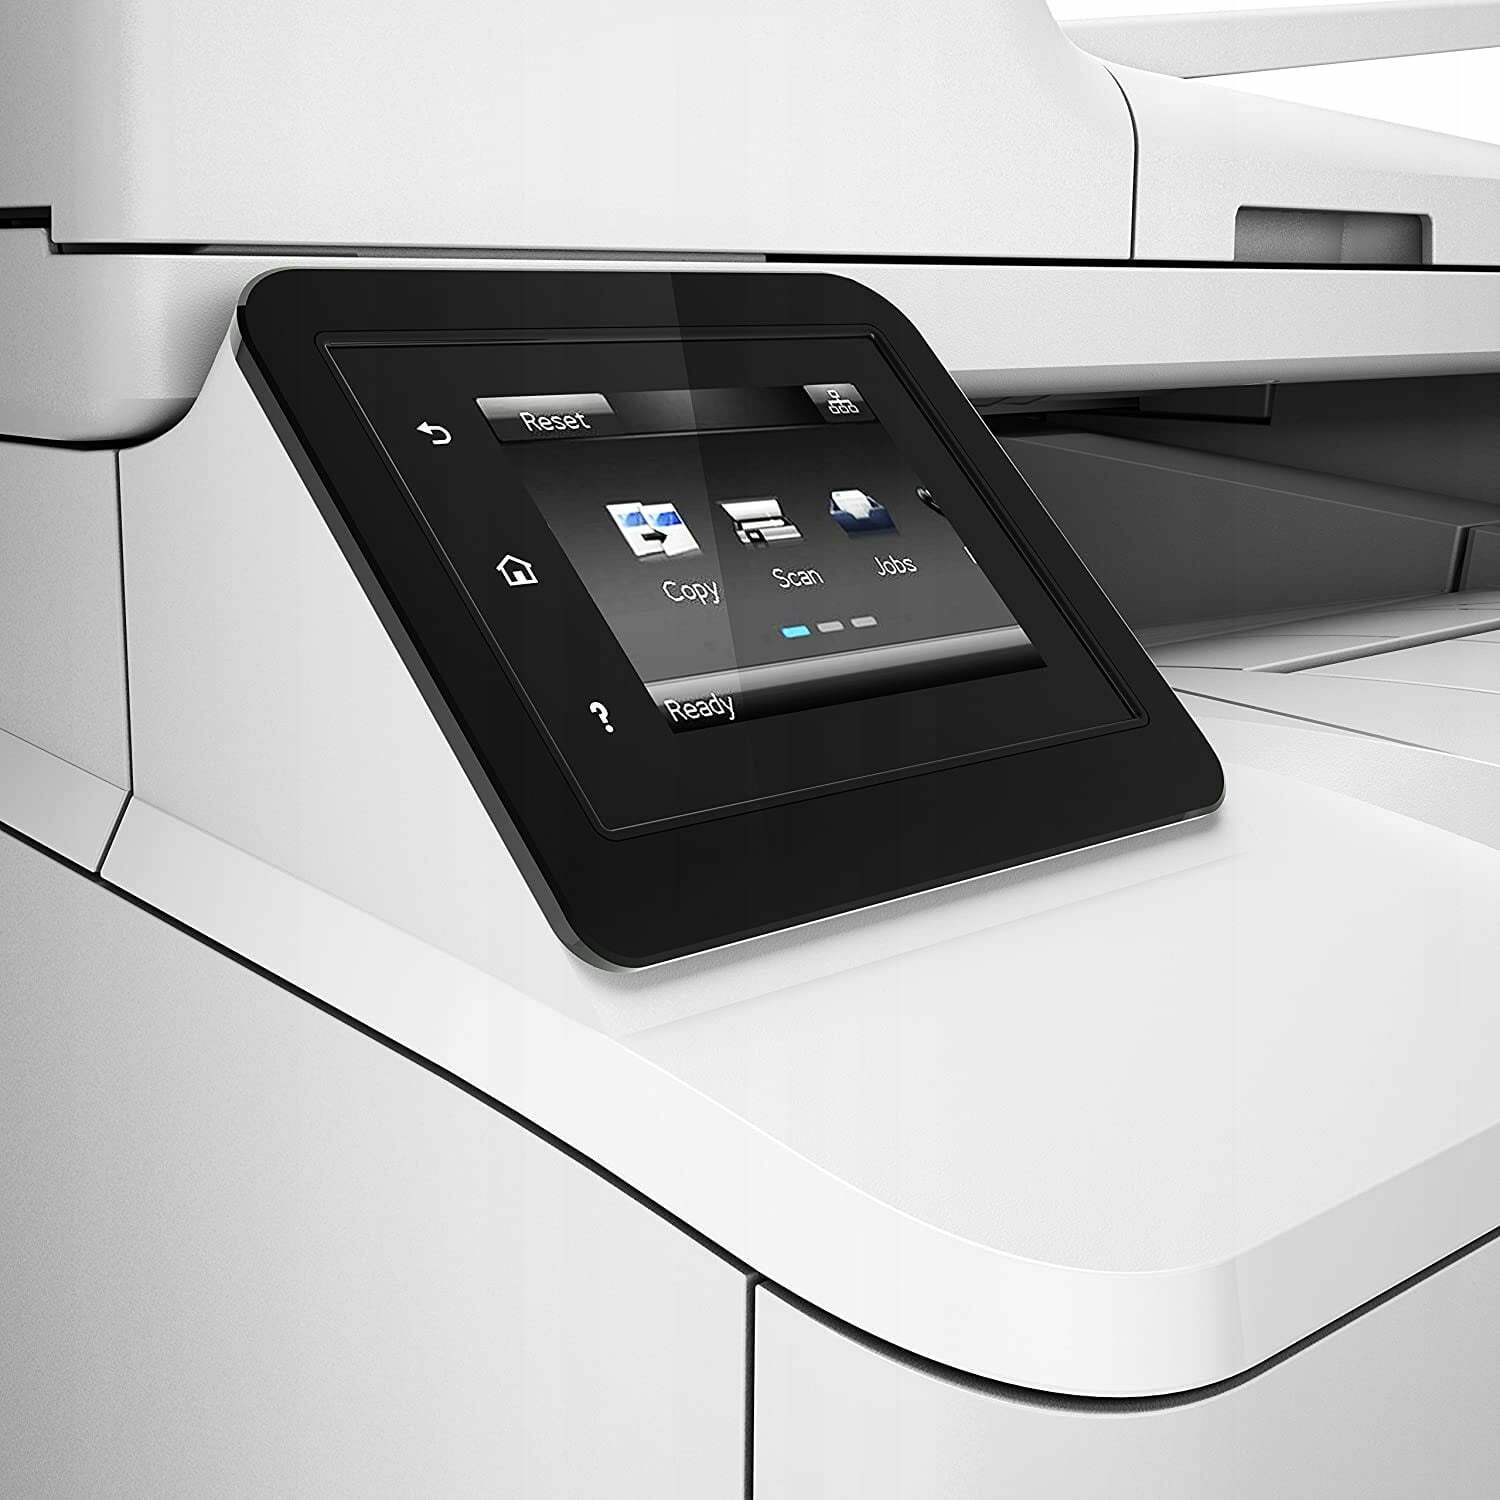 HP-LaserJet-Pro-MFP-M227fdw-drukarka-wielof-Waga-produktu-z-opakowaniem-jednostkowym-31-2-kg